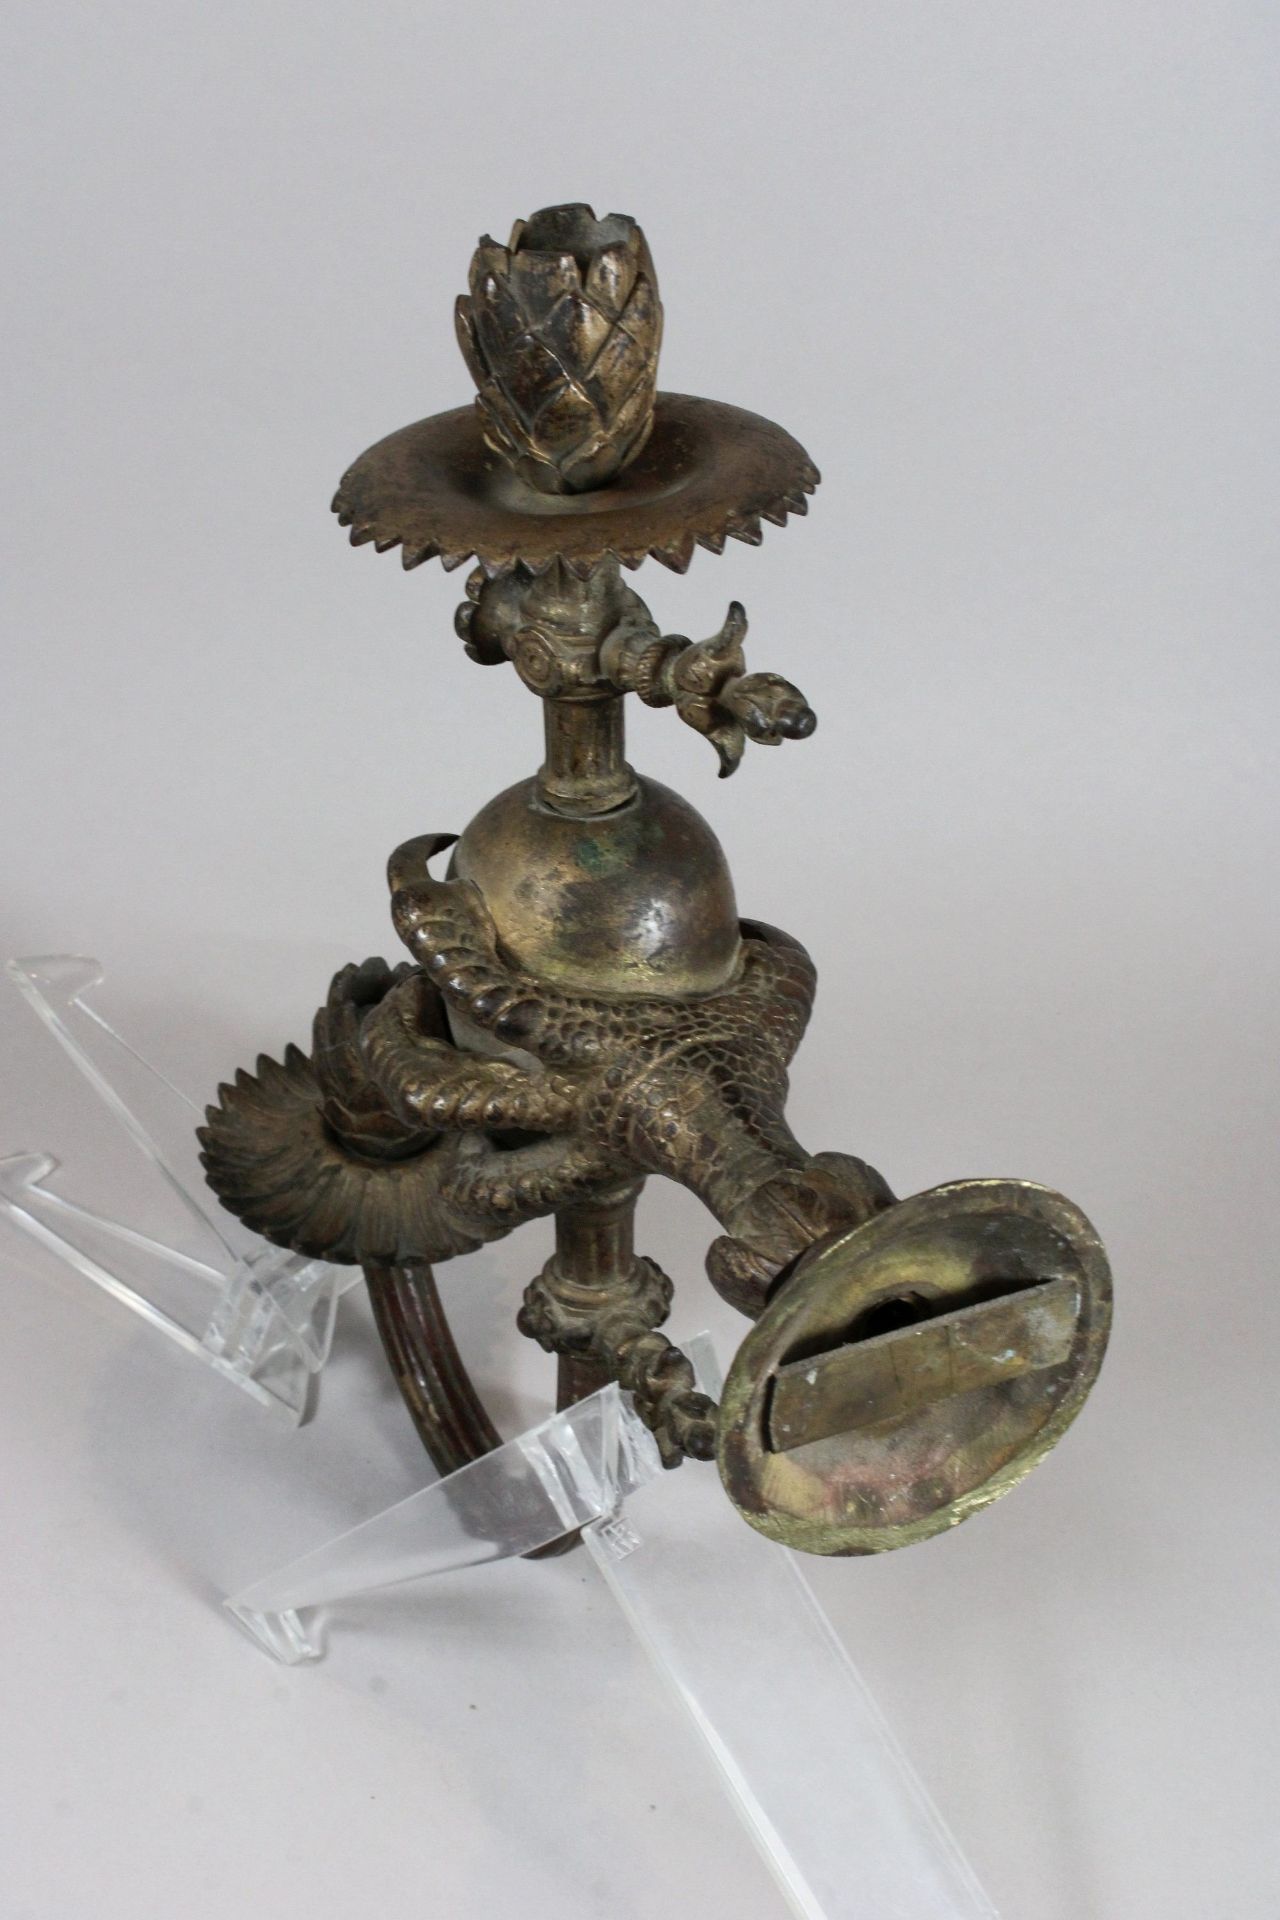 Paar Wandleuchter, 19 Jh., Bronze, Maße: H. 31,5 cm, T. 24 cm. Guter, altersbedingter Zustand. - Image 2 of 2